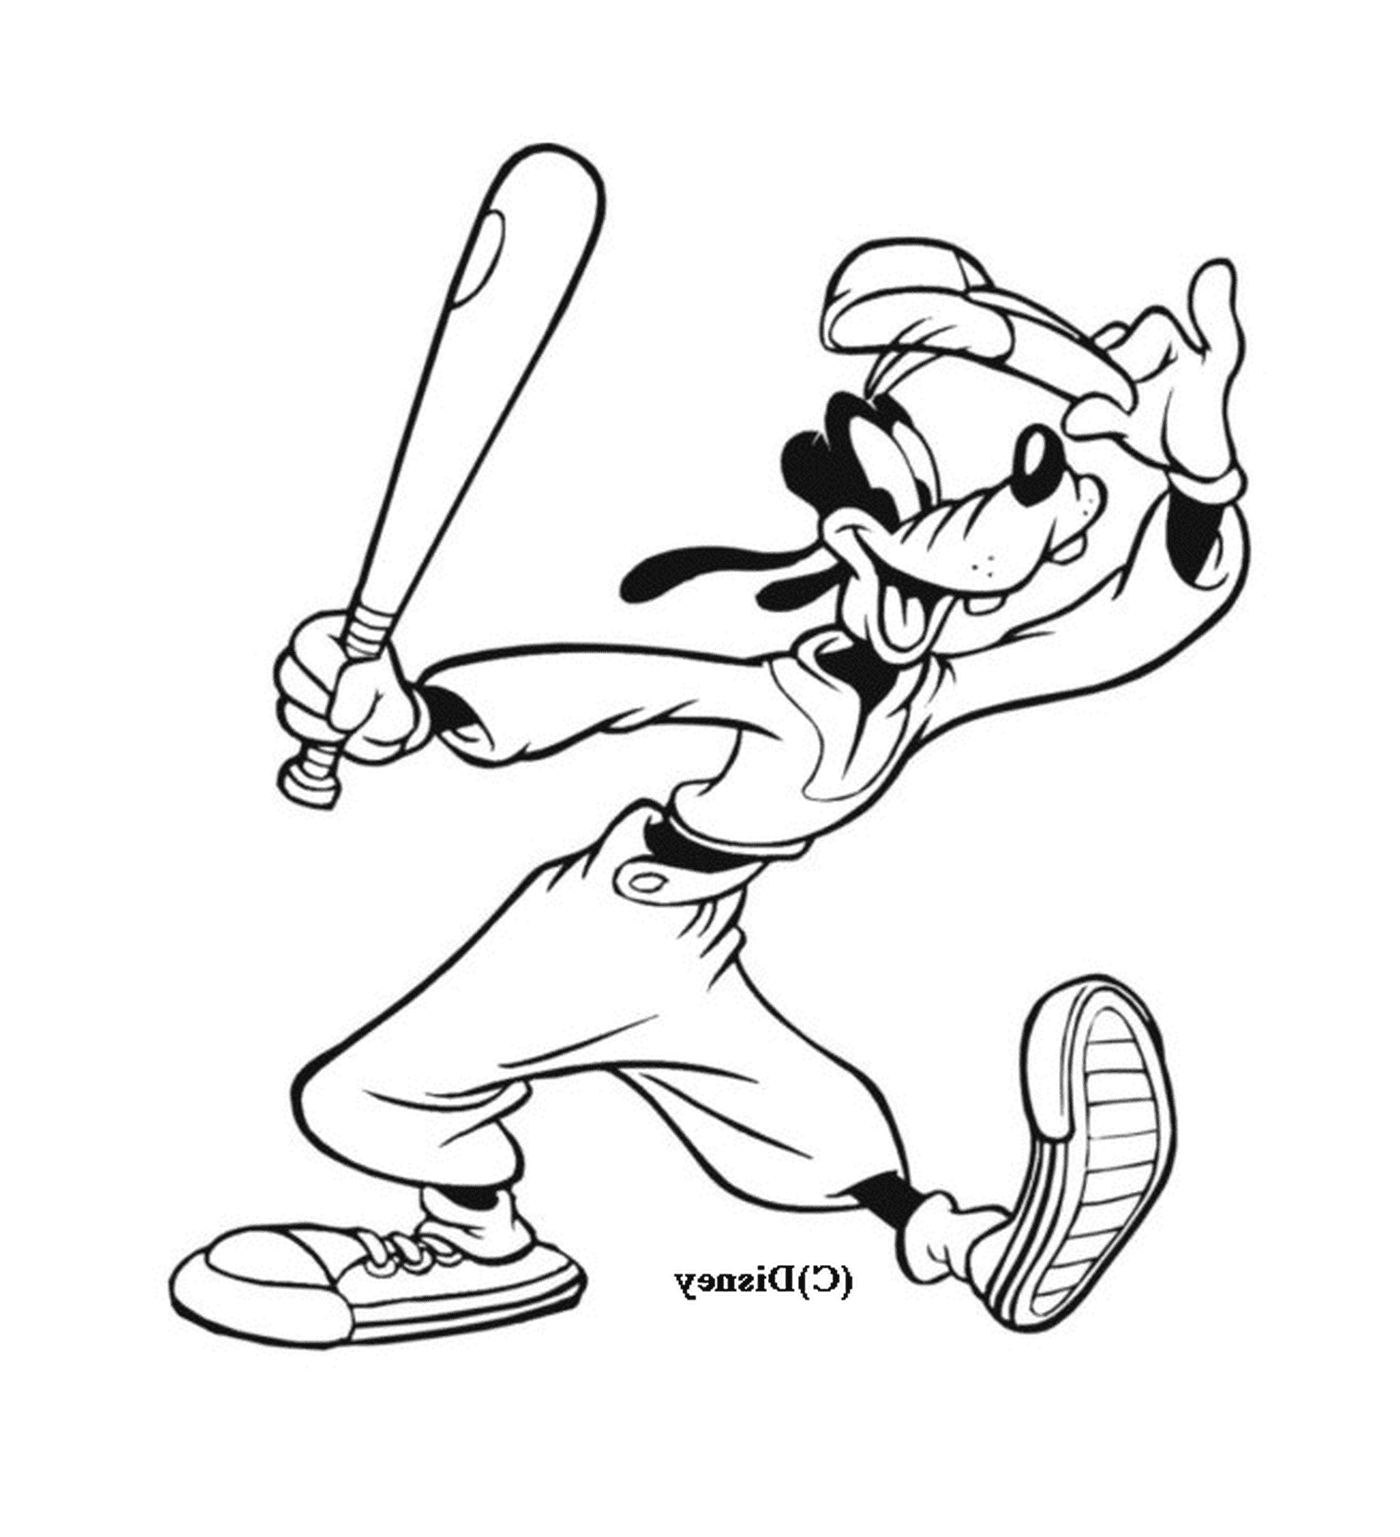   Dingo joue au baseball avec une batte 